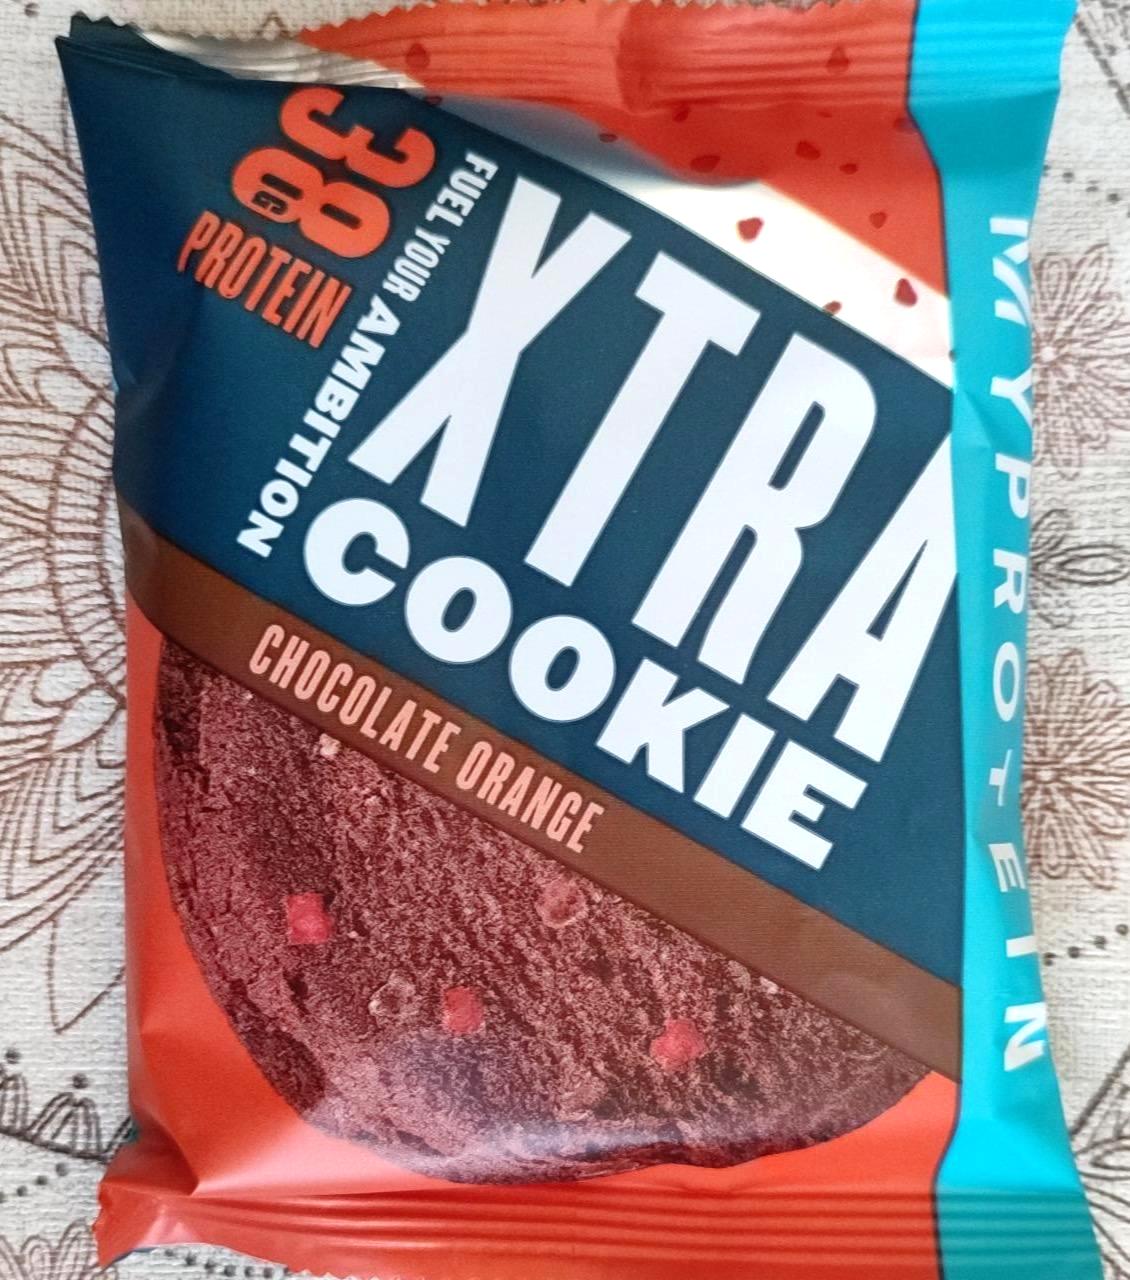 Képek - Xtra protein cookie Chocolat orange MyProtein